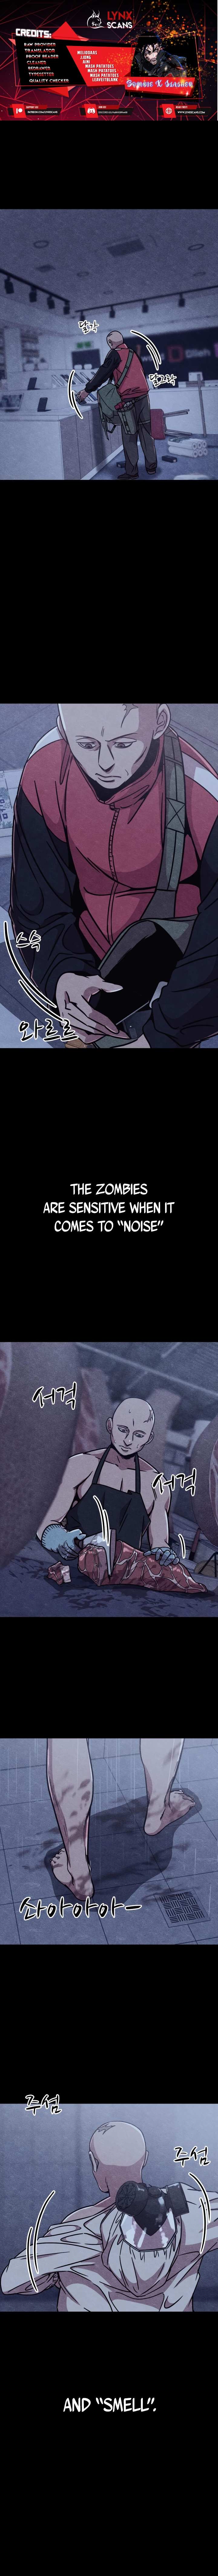 Zombie X Slasher - Page 2